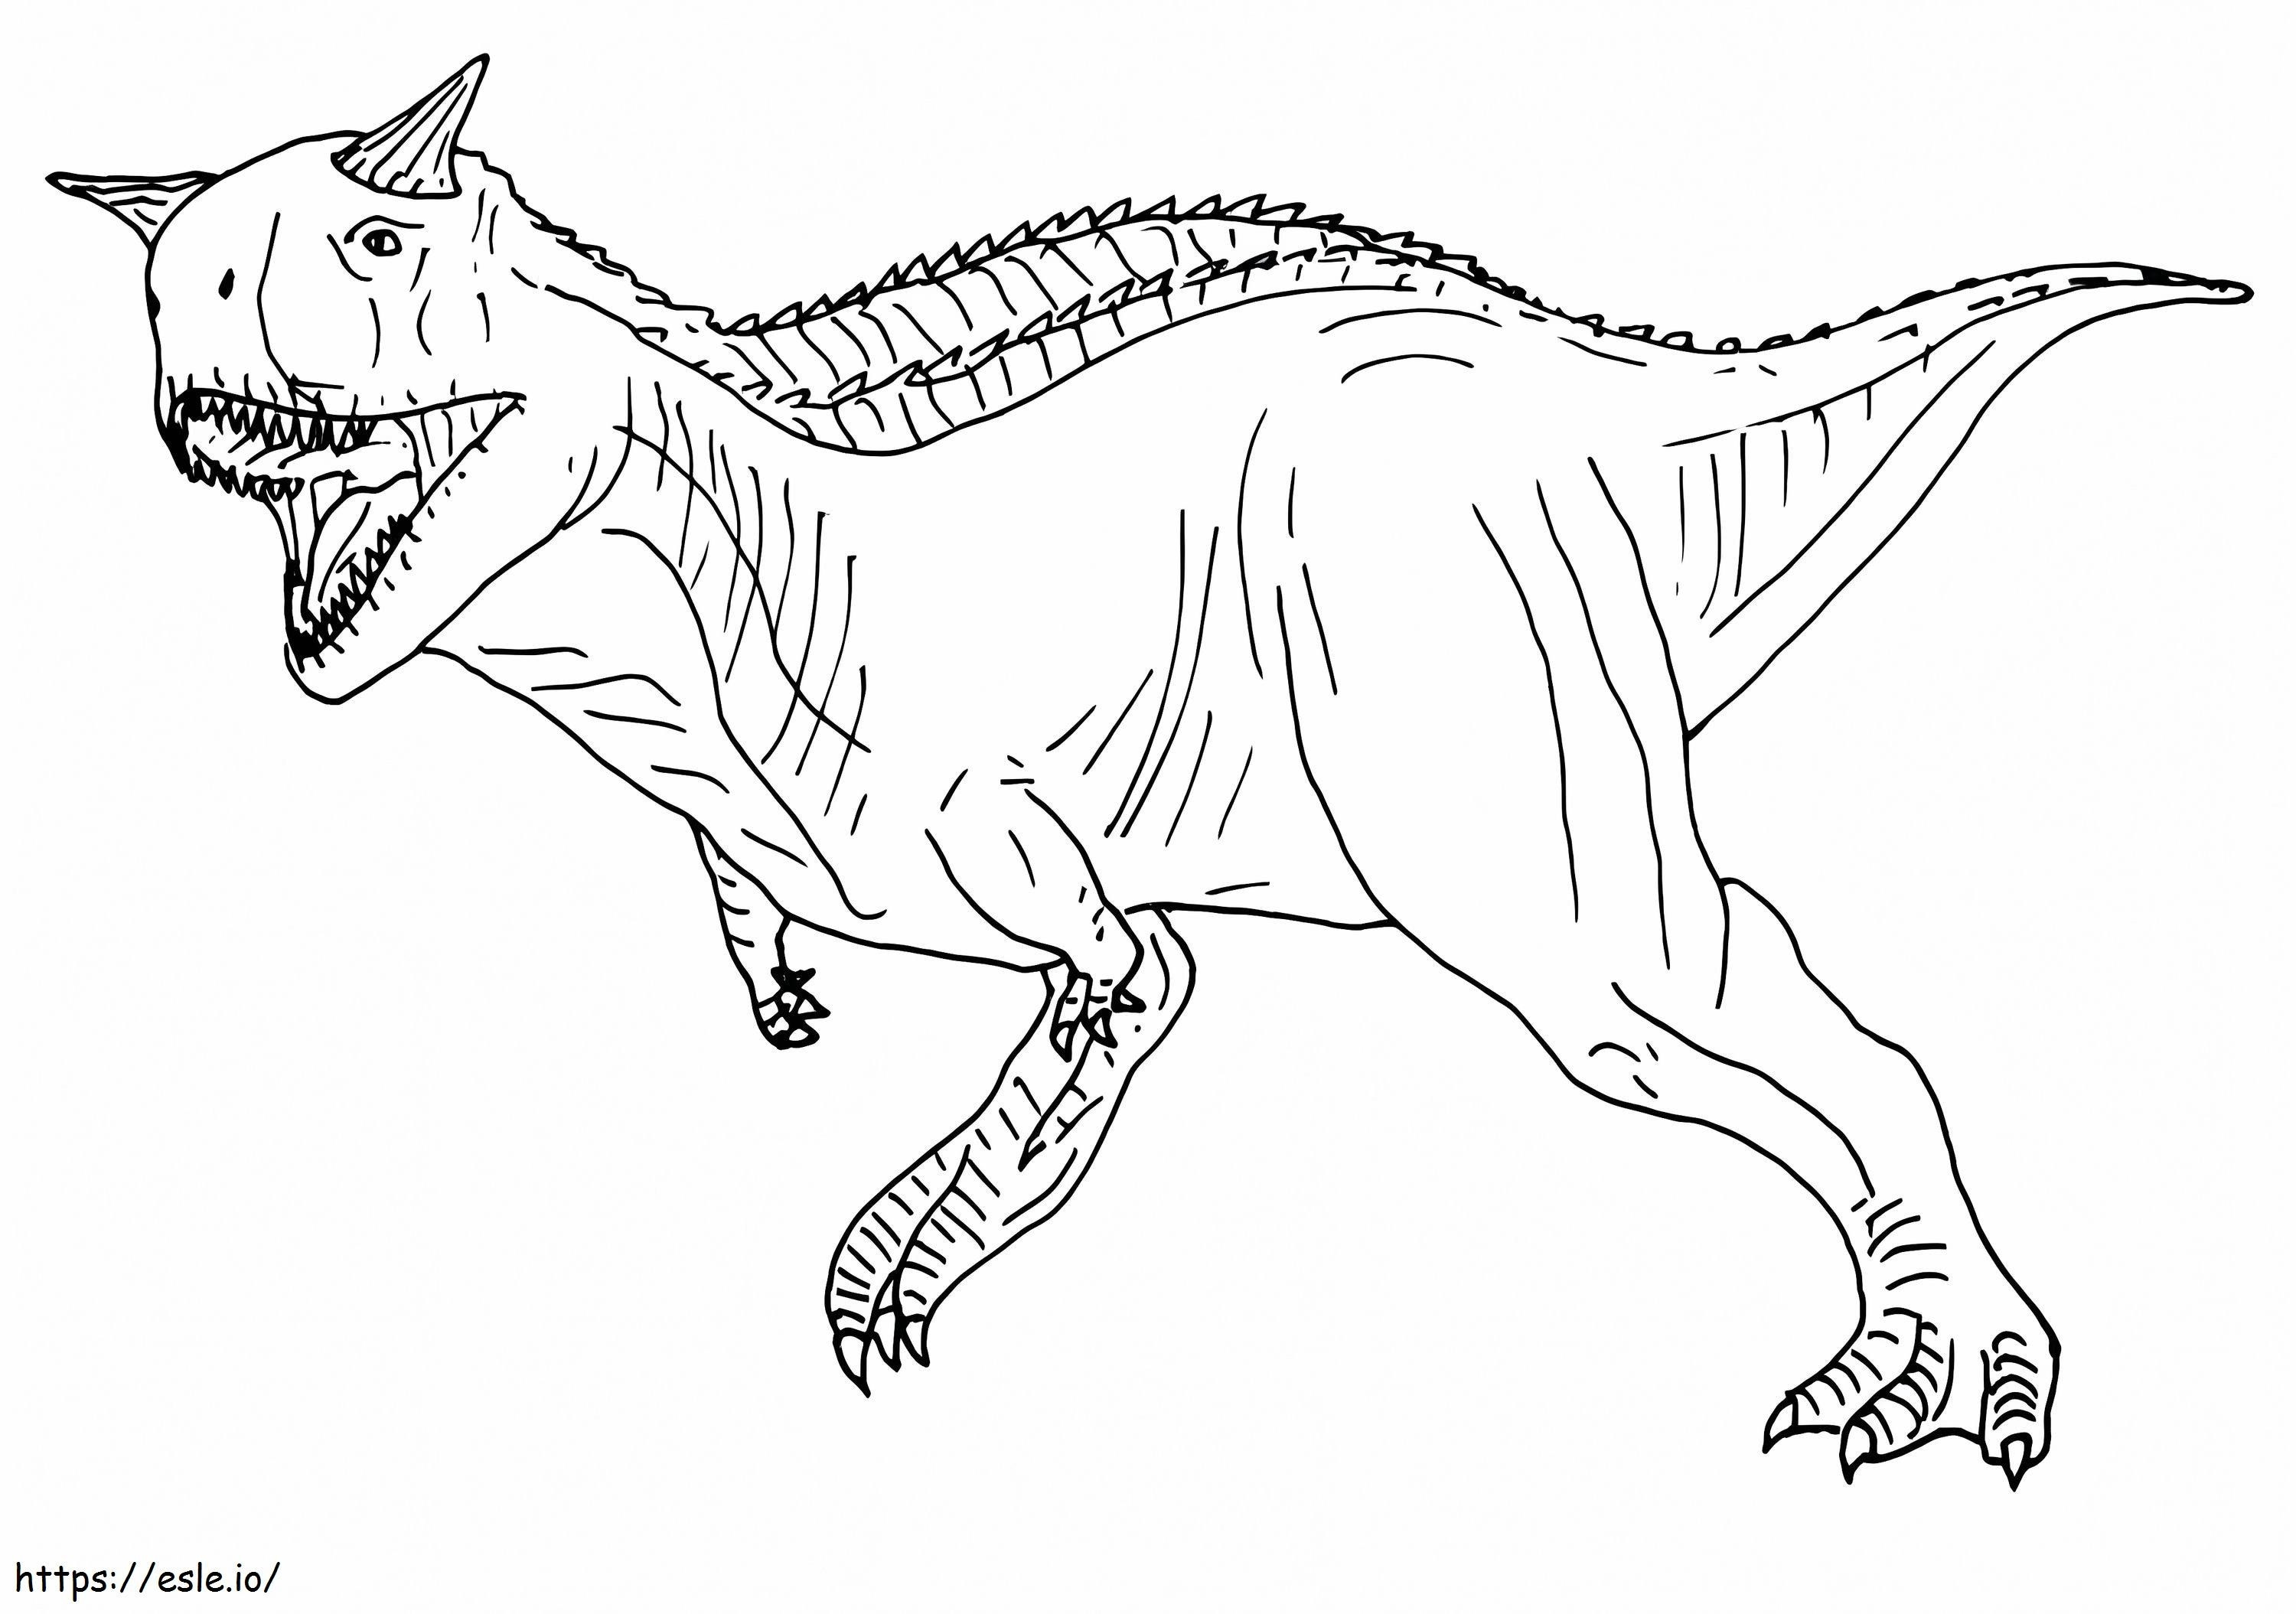 カルノタウルスが走る ぬりえ - 塗り絵